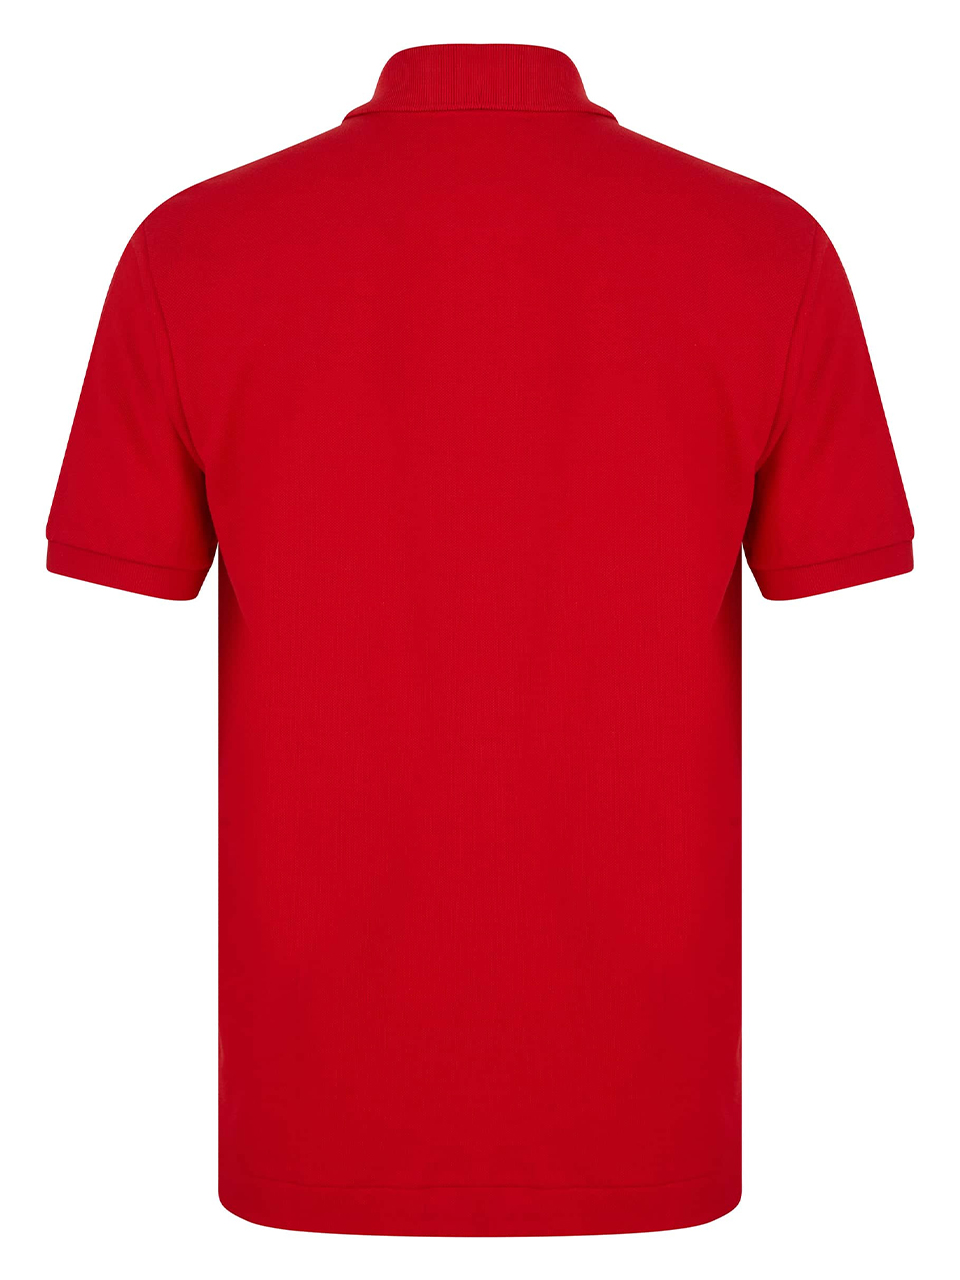 Imagem de: Camisa Polo Lacoste Vermelha